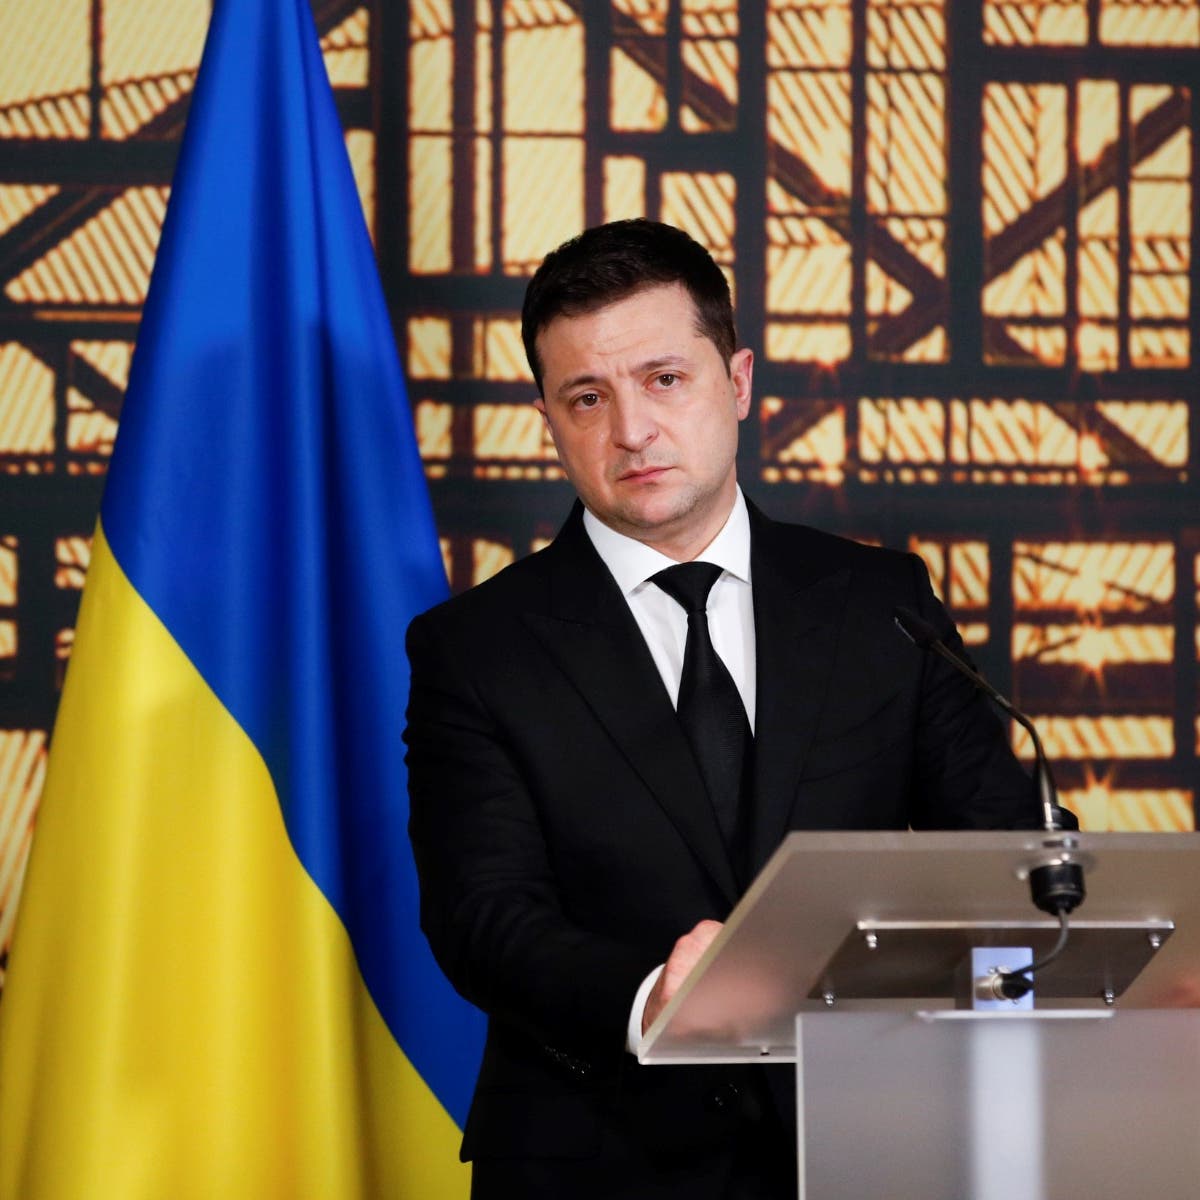 رئيس أوكرانيا: لا يمكن لروسيا تحديد حق انضمامنا للناتو